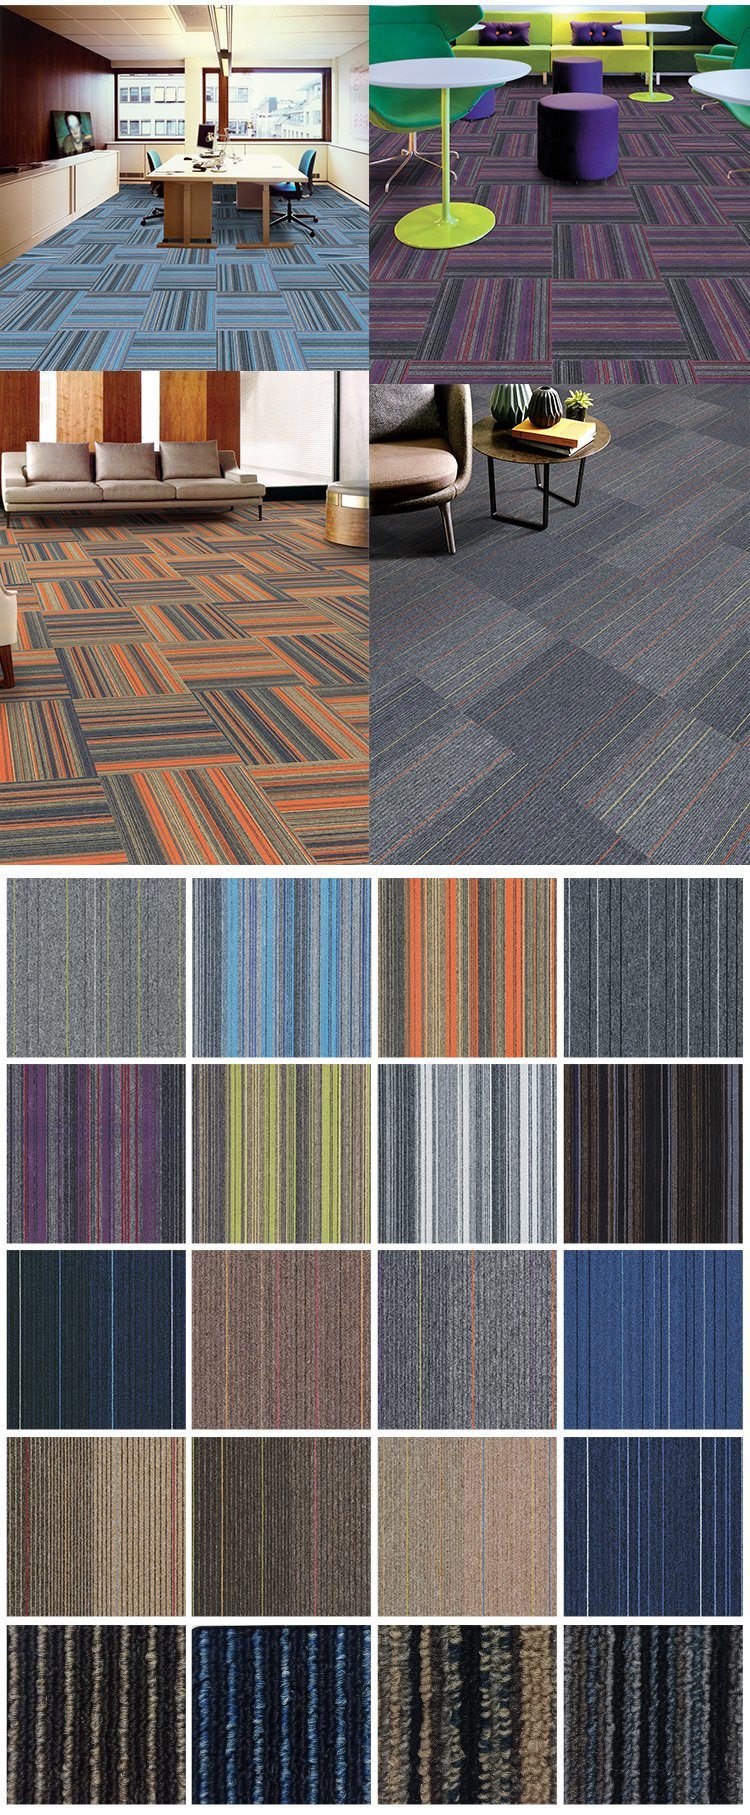 Luxury Removable High Quality Carpet Tiles Plain Color 50X50 Office Modular Square Carpet